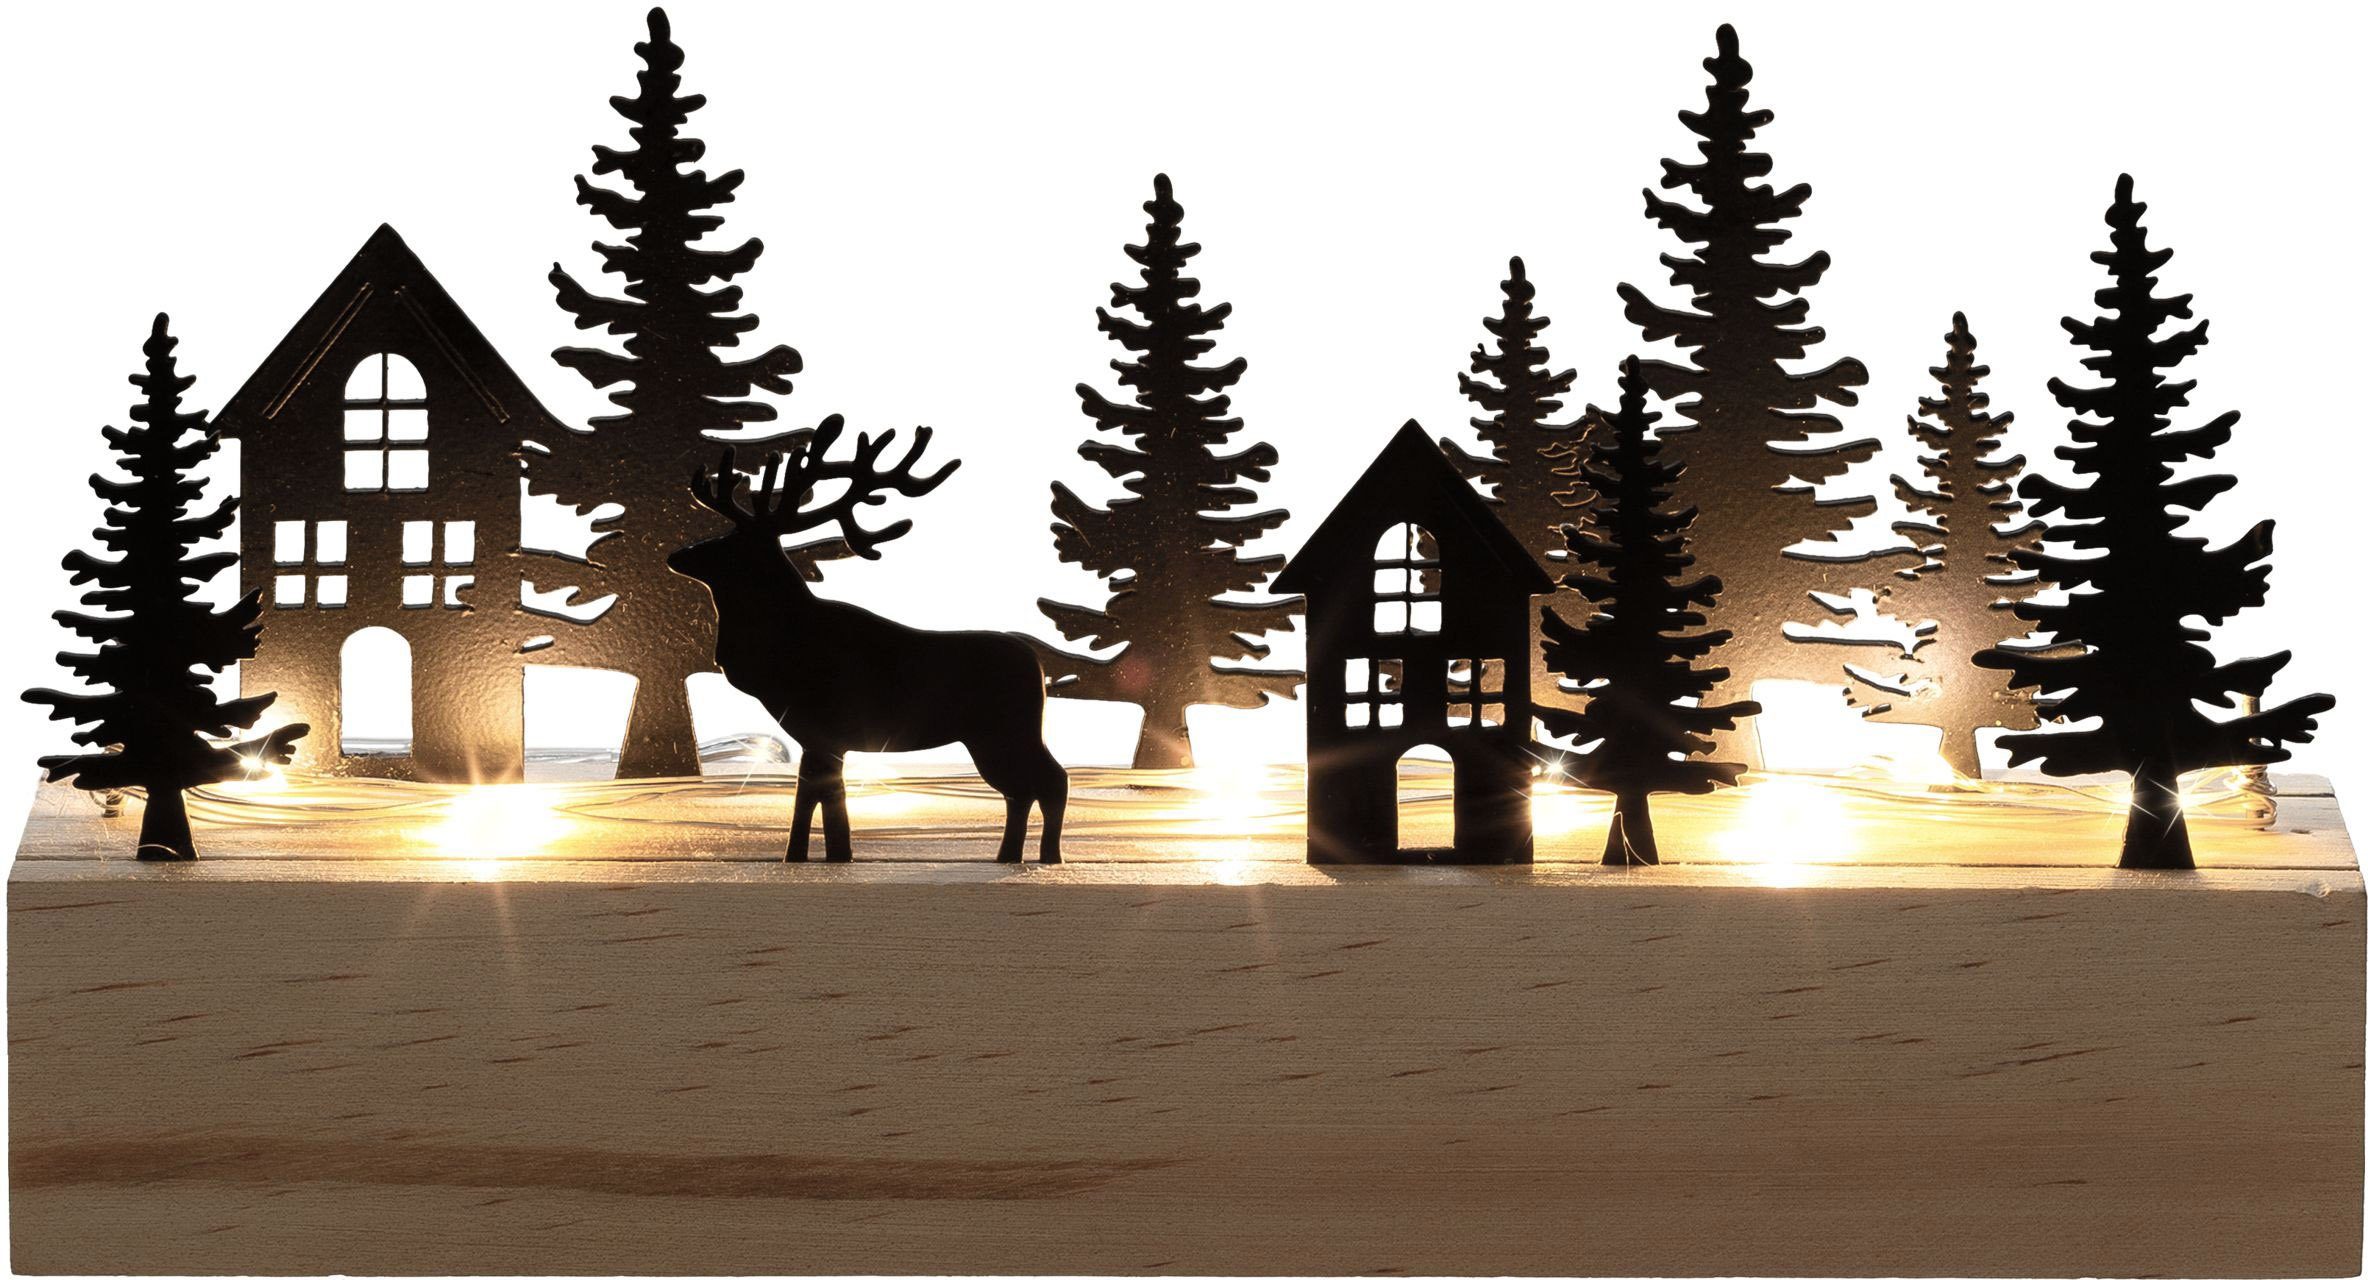 Creativ light Weihnachtsszene Weihnachtsdeko mit LED-Beleuchtung, Landschaft mit Tannen, Häusern und Hirsch